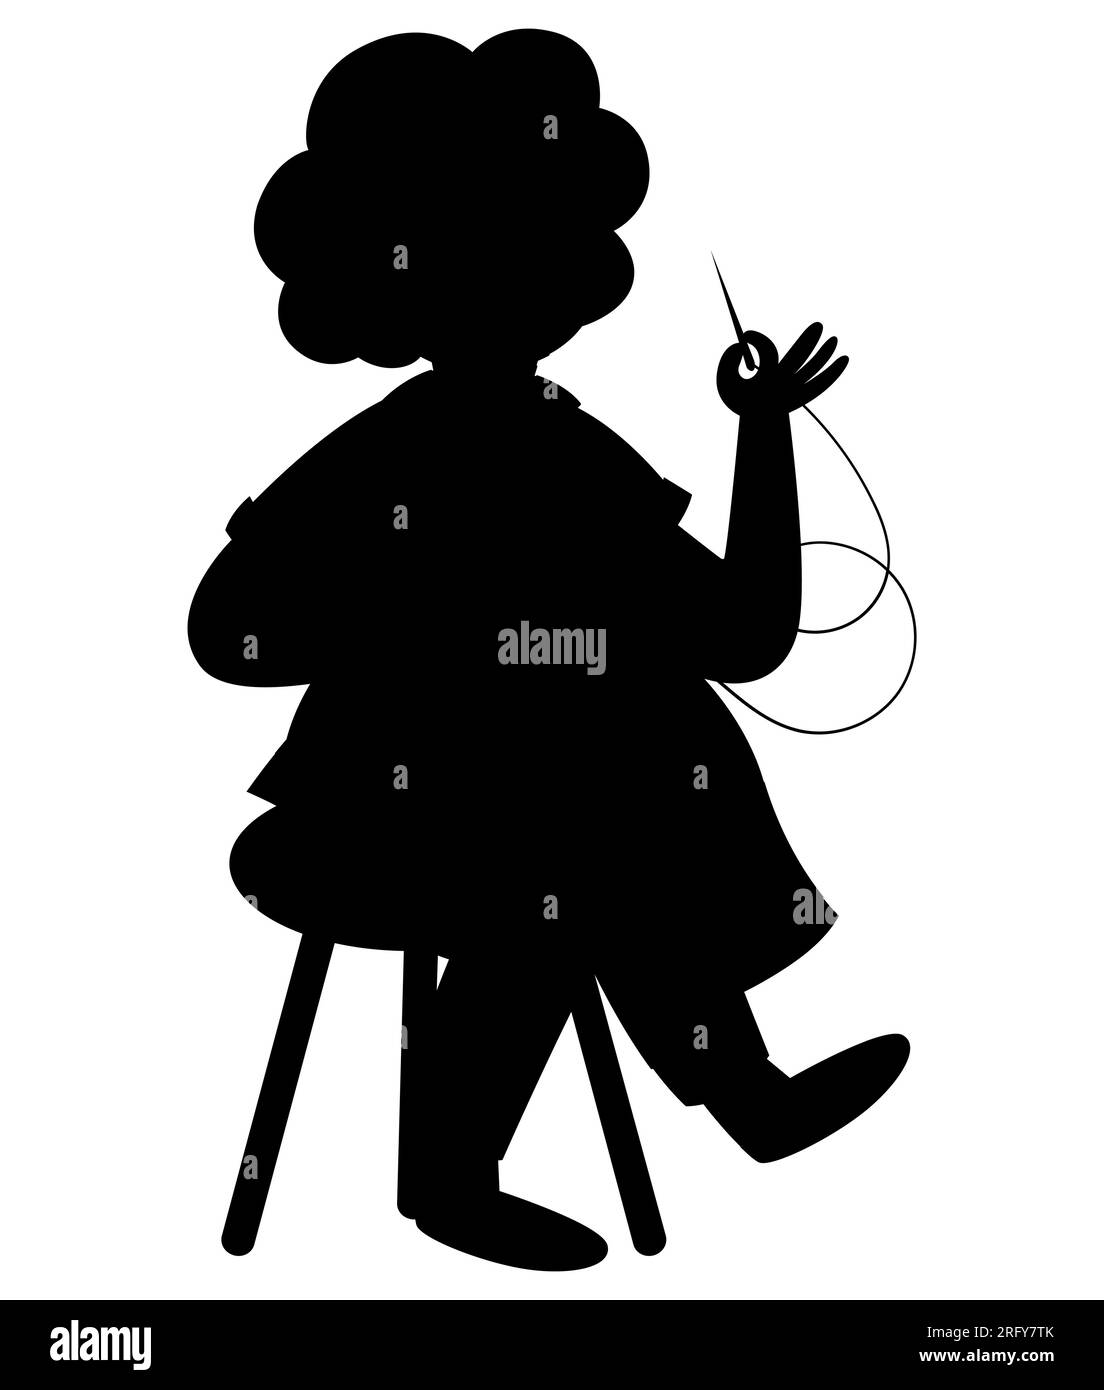 La silhouette nera di una nonna dei cartoni animati che lavora a maglia, un'anziana con i capelli corti che cucisce seduto su una sedia, vettoriale isolato su uno sfondo bianco Illustrazione Vettoriale